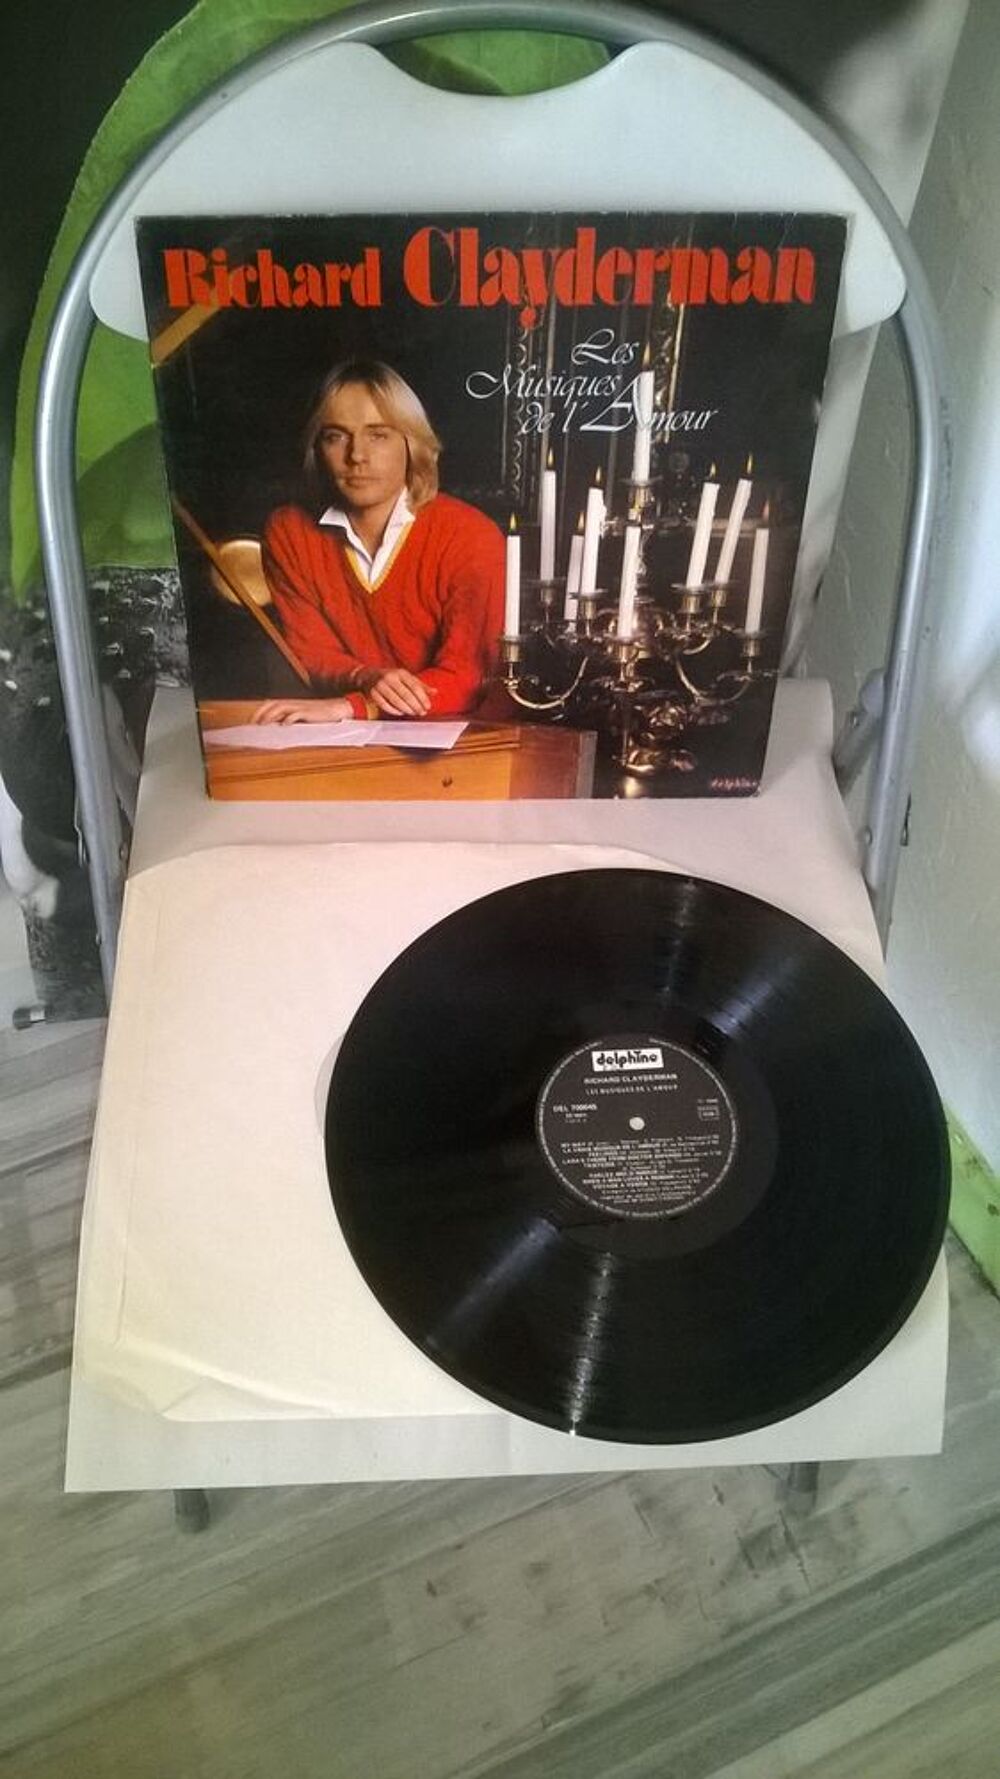 Vinyle Richard Clayderman
Les Musiques De L'Amour
1980
Ex CD et vinyles